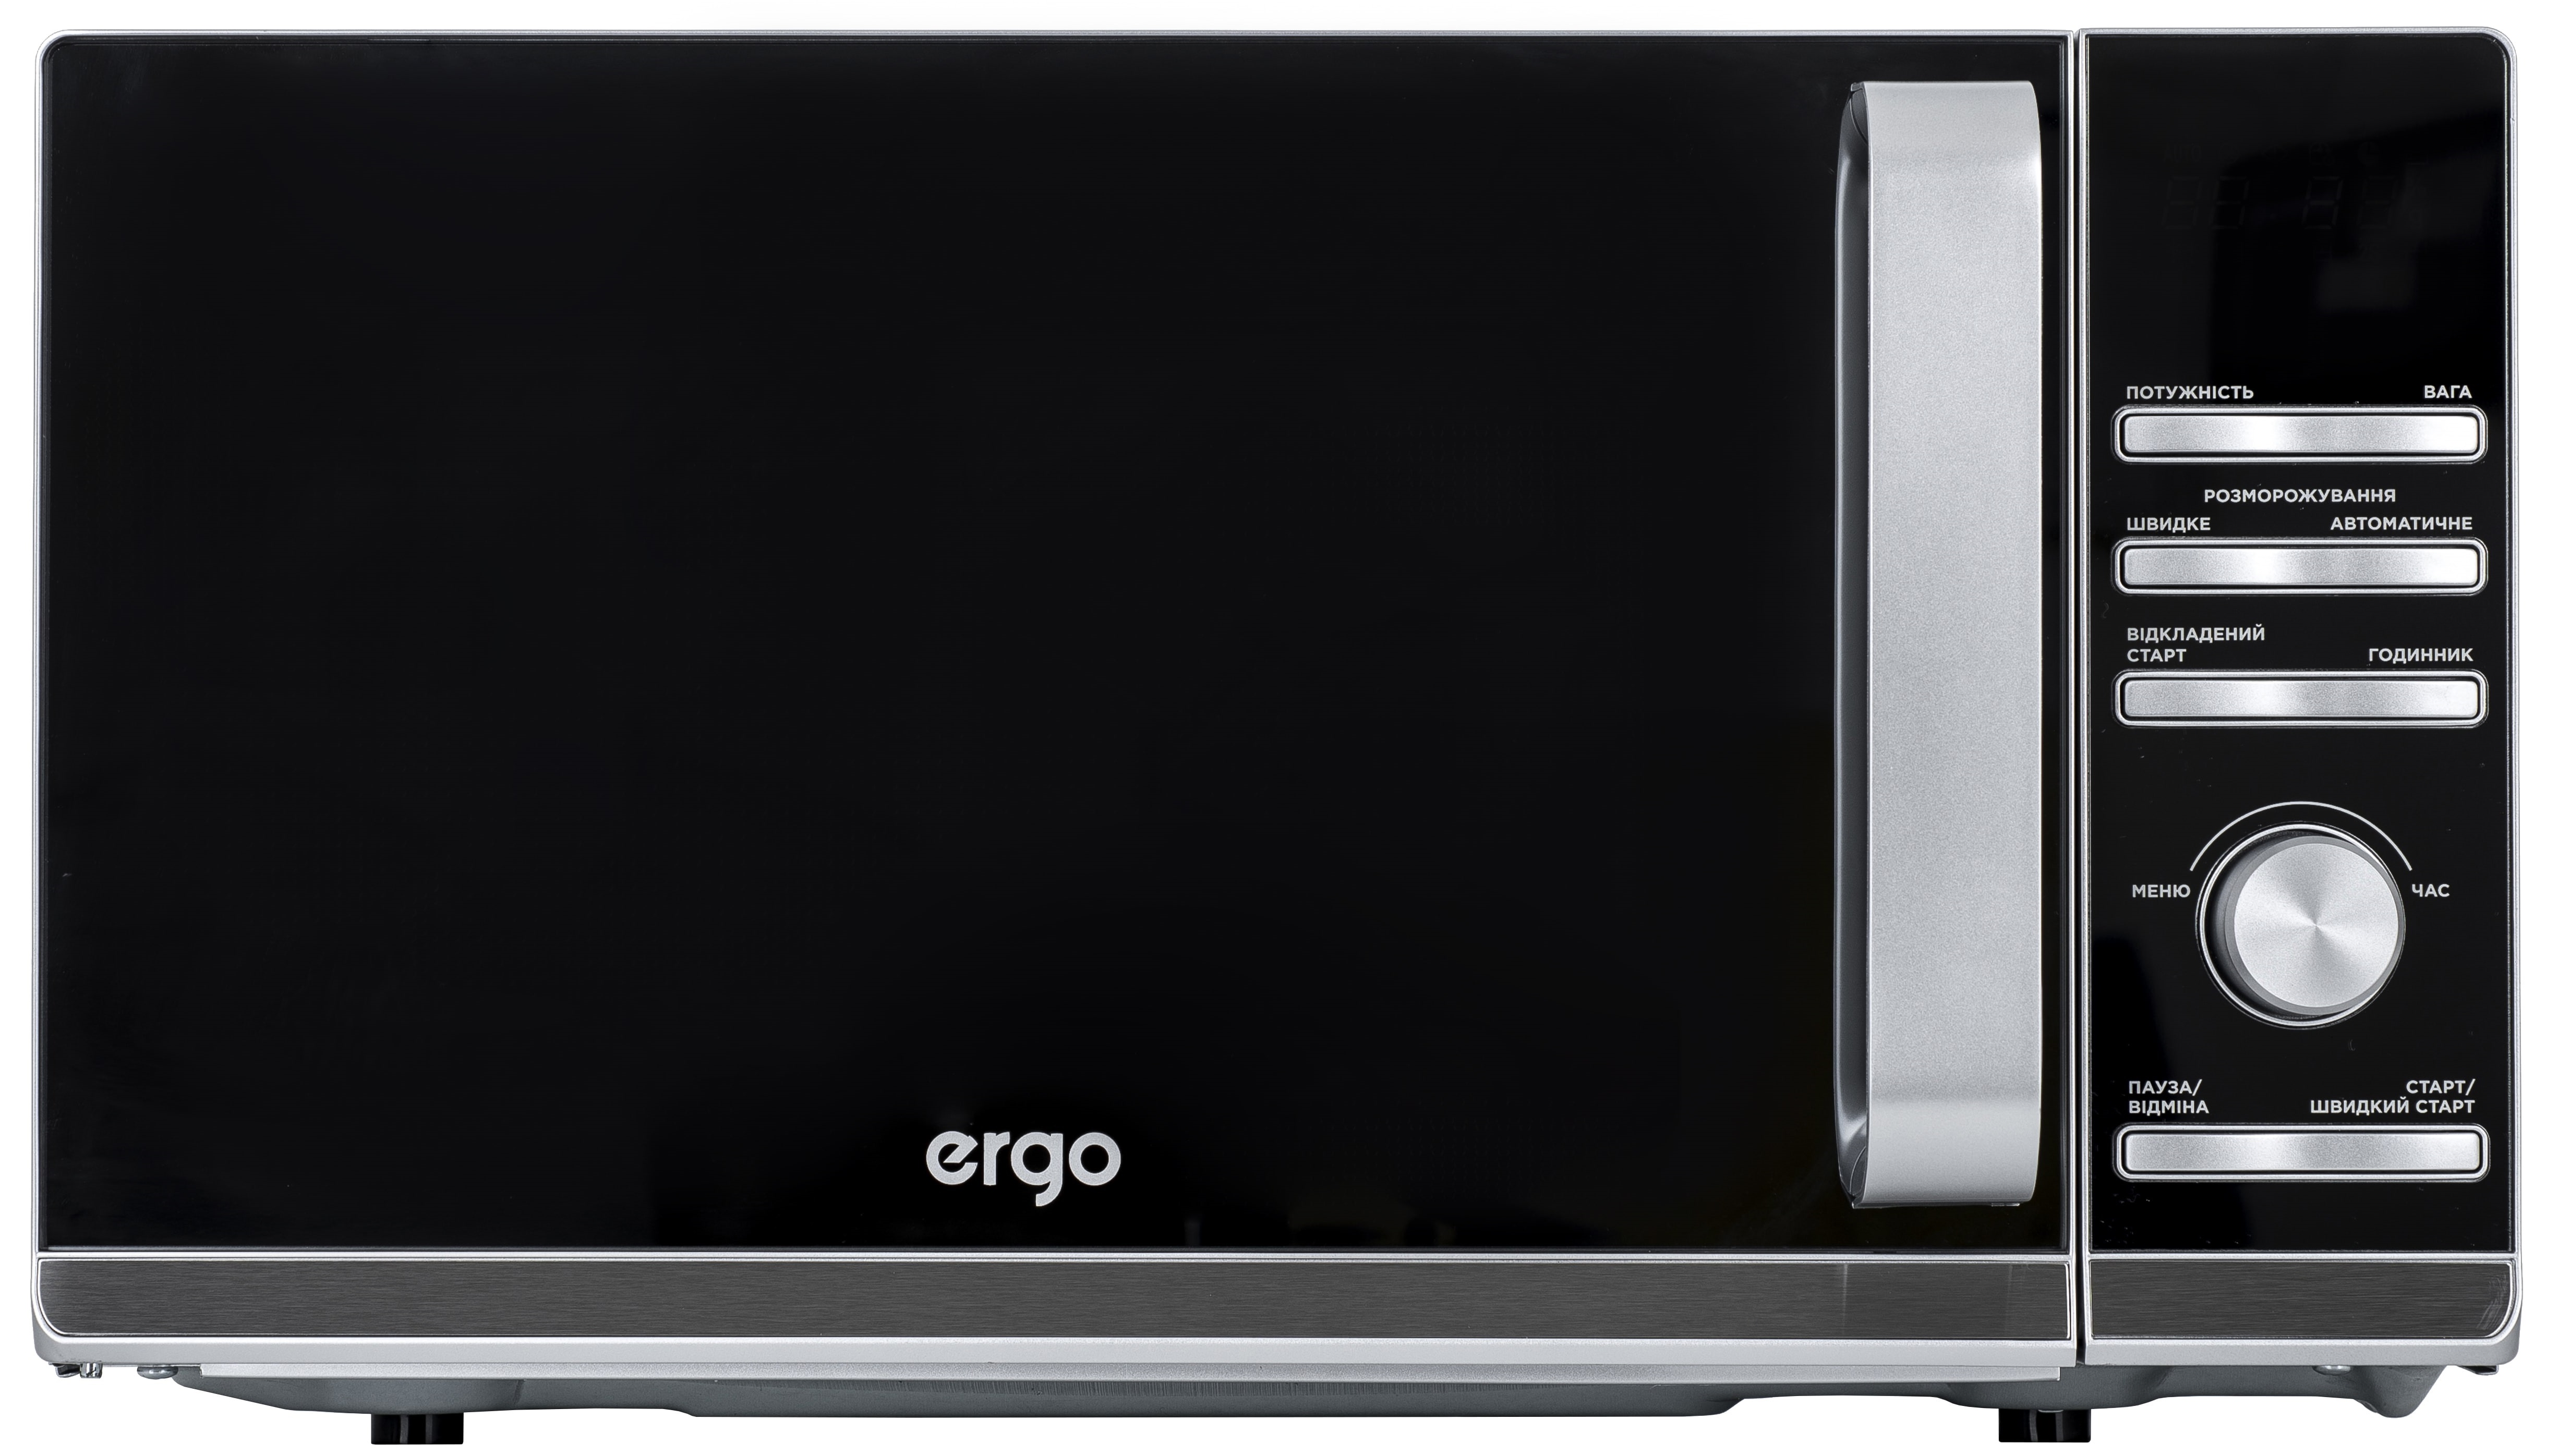 Микроволновая печь ERGO EM-2055 в Киеве